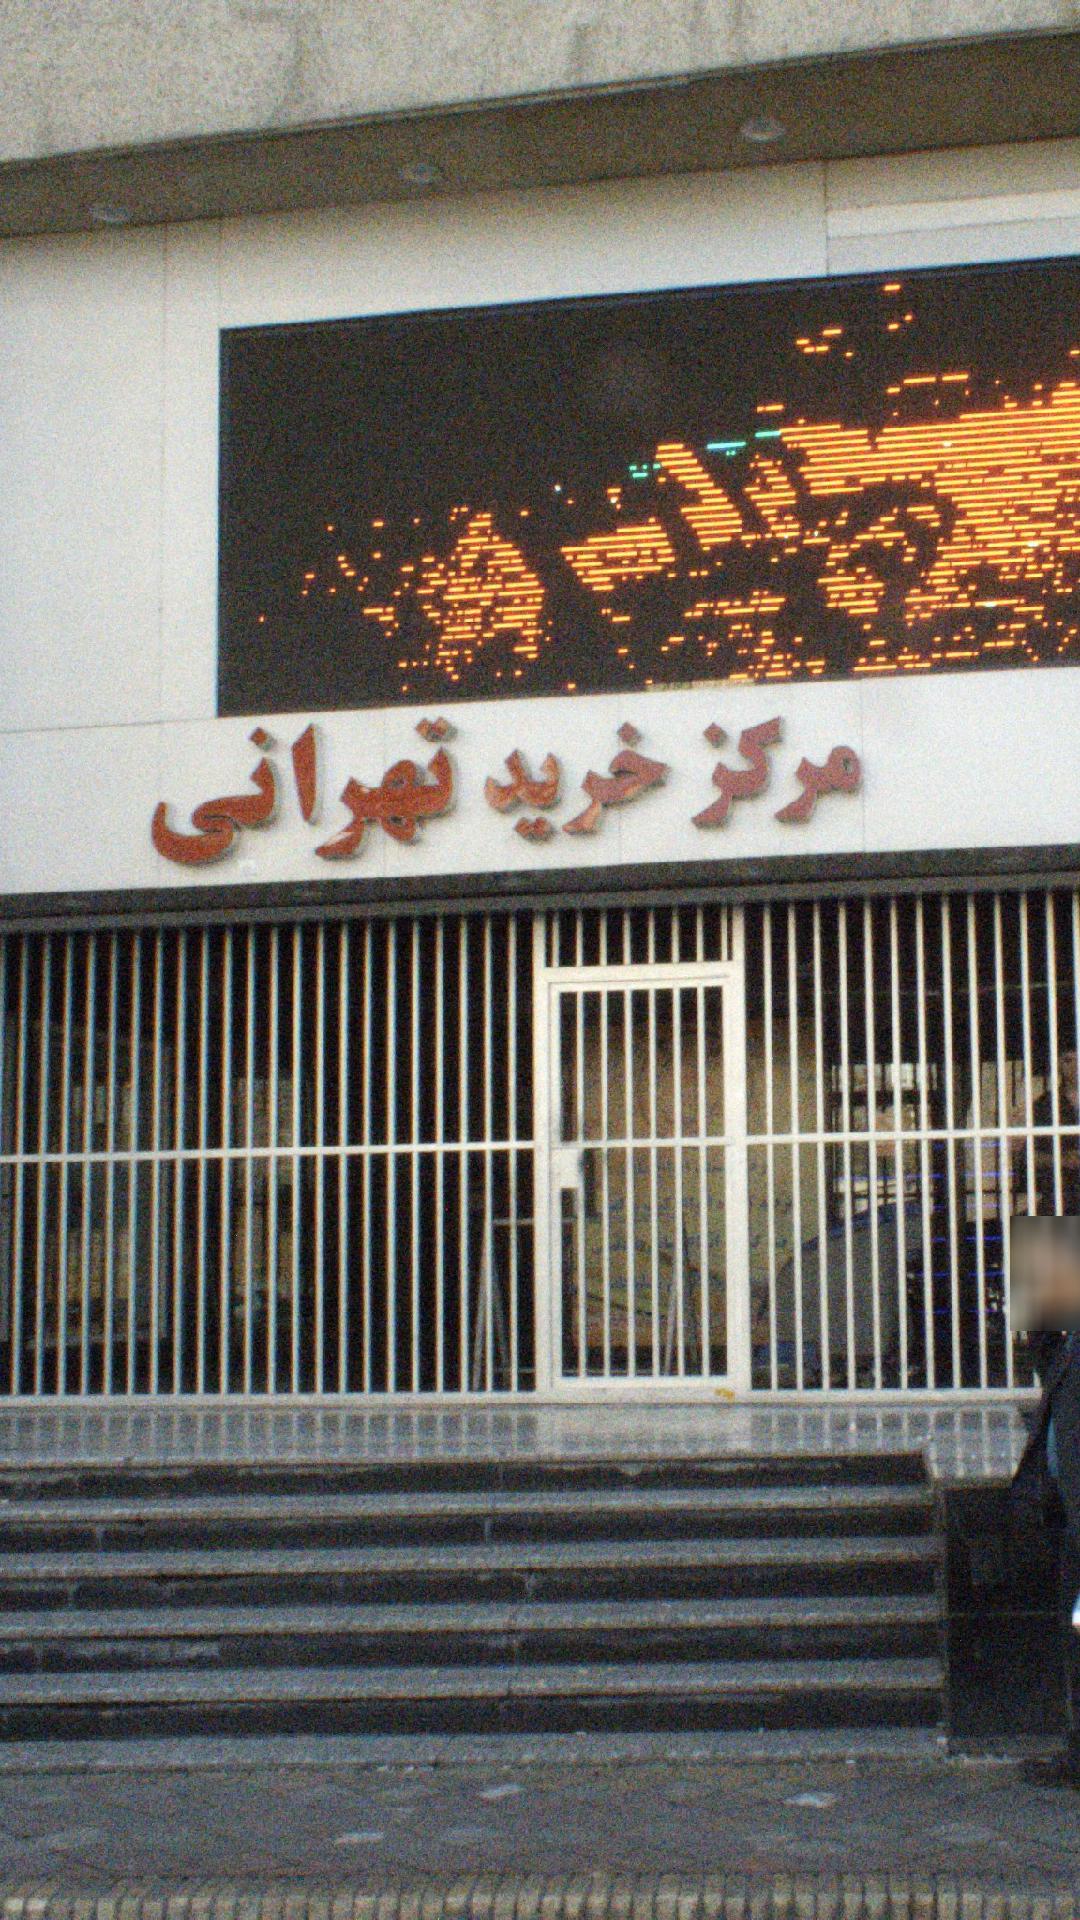 مرکز خرید تهرانی